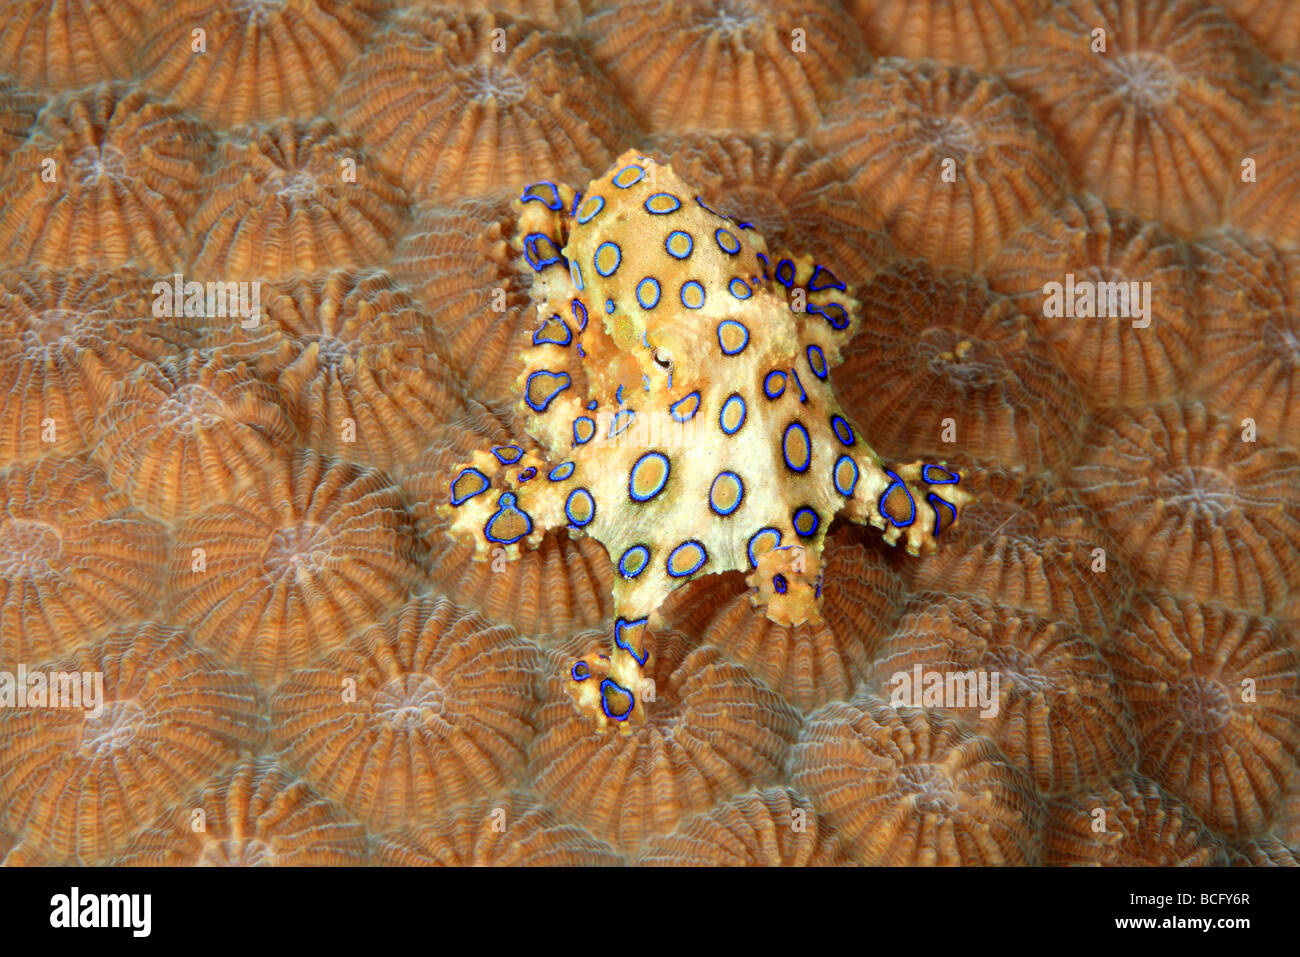 Velenosi blu maggiore di inanellare Octopus, Hapalochlaena lunulata. Questo polpo è in grado di iniettare una molto potente neurotossina che può uccidere Foto Stock